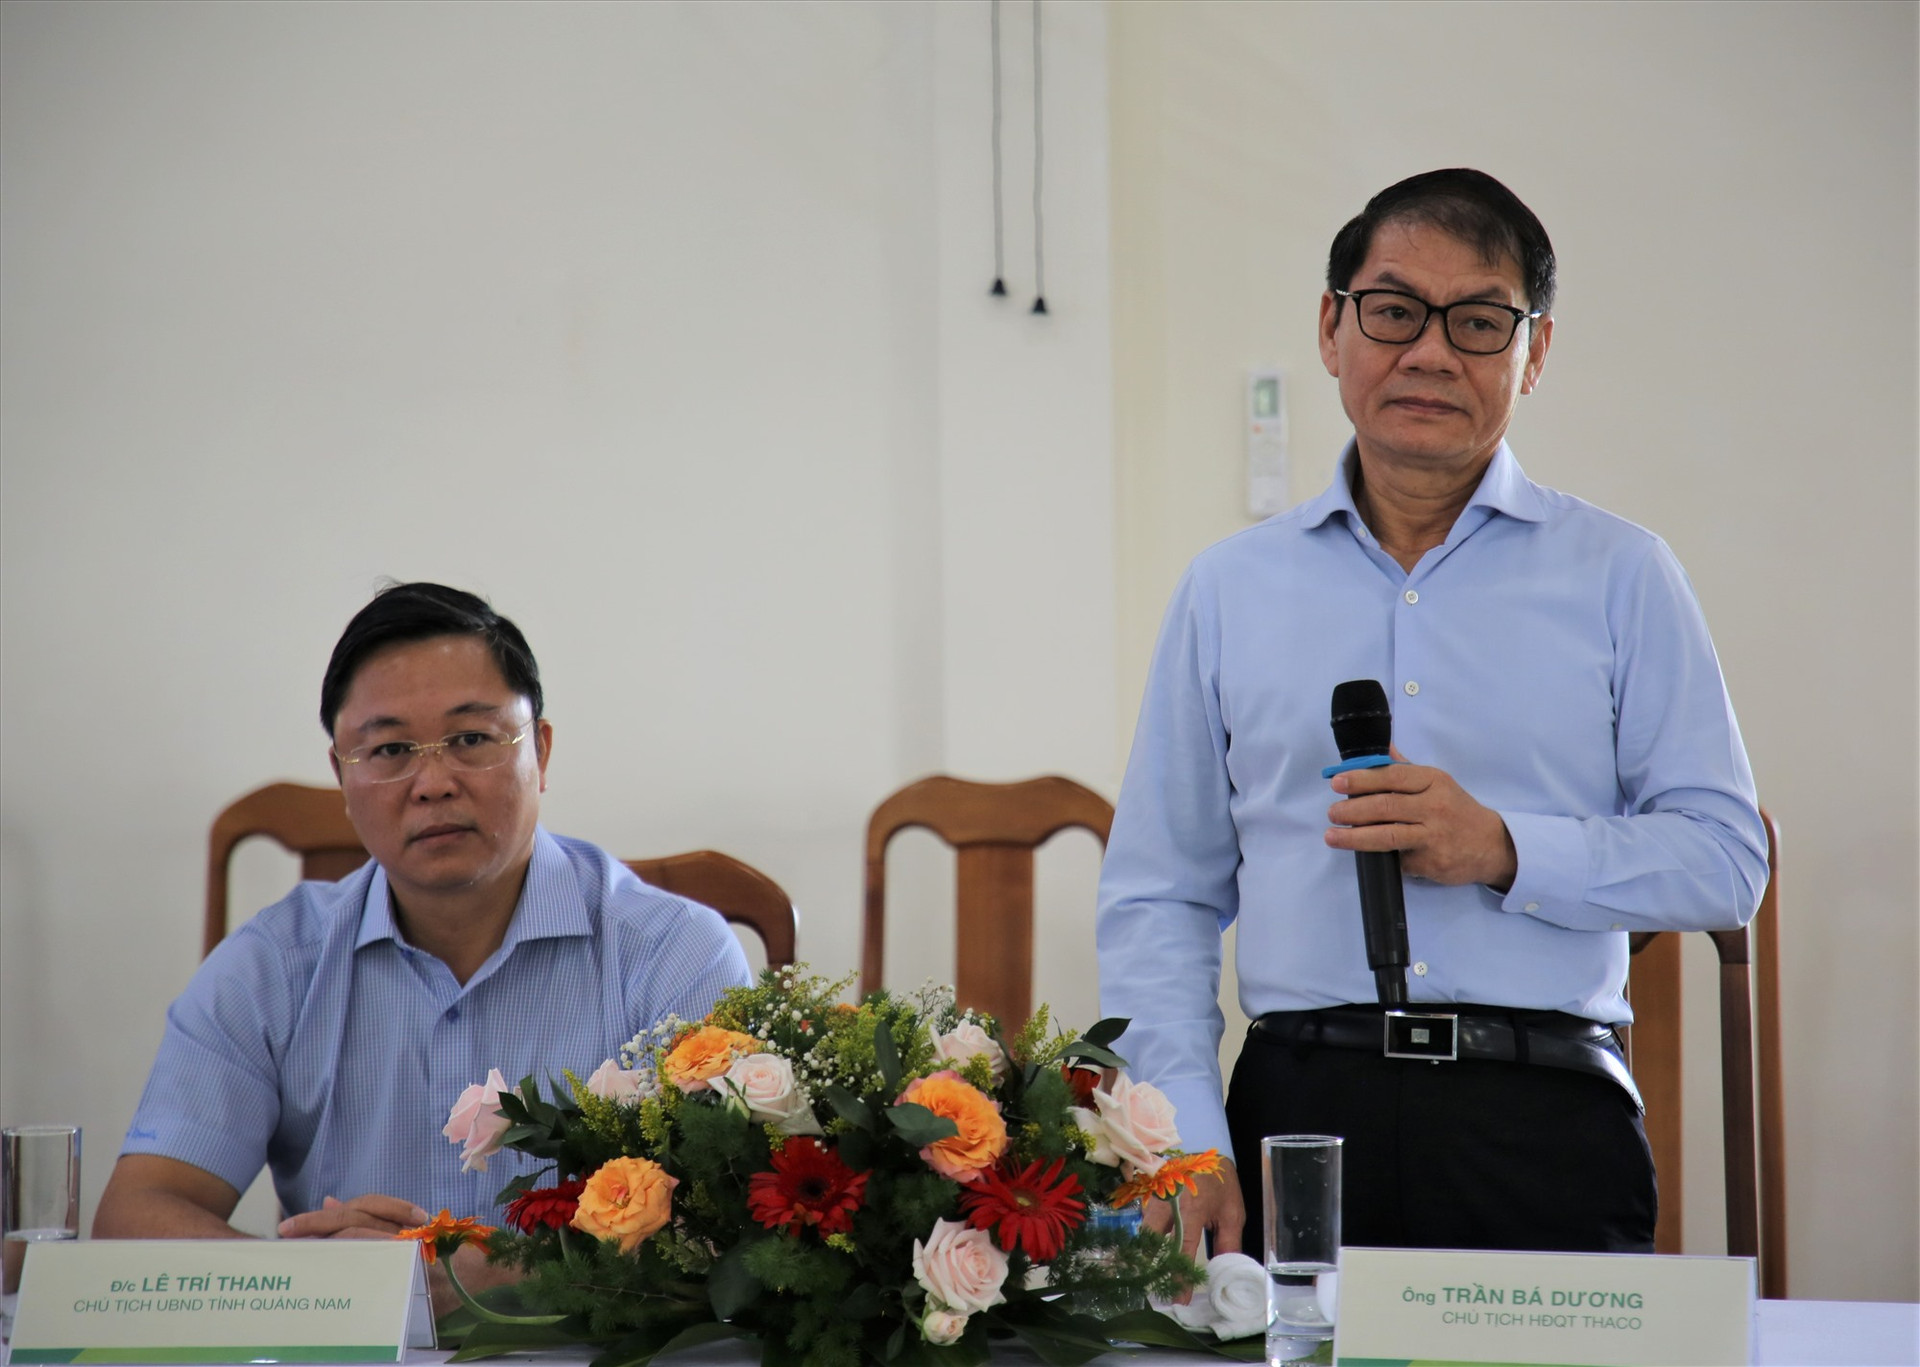 Chủ tịch HĐQT Tập đoàn THACO Trần Bá Dương chia sẻ về định hướng phát triển nông nghiệp, chăn nuôi tại tỉnh Attapeu. Ảnh: A.N